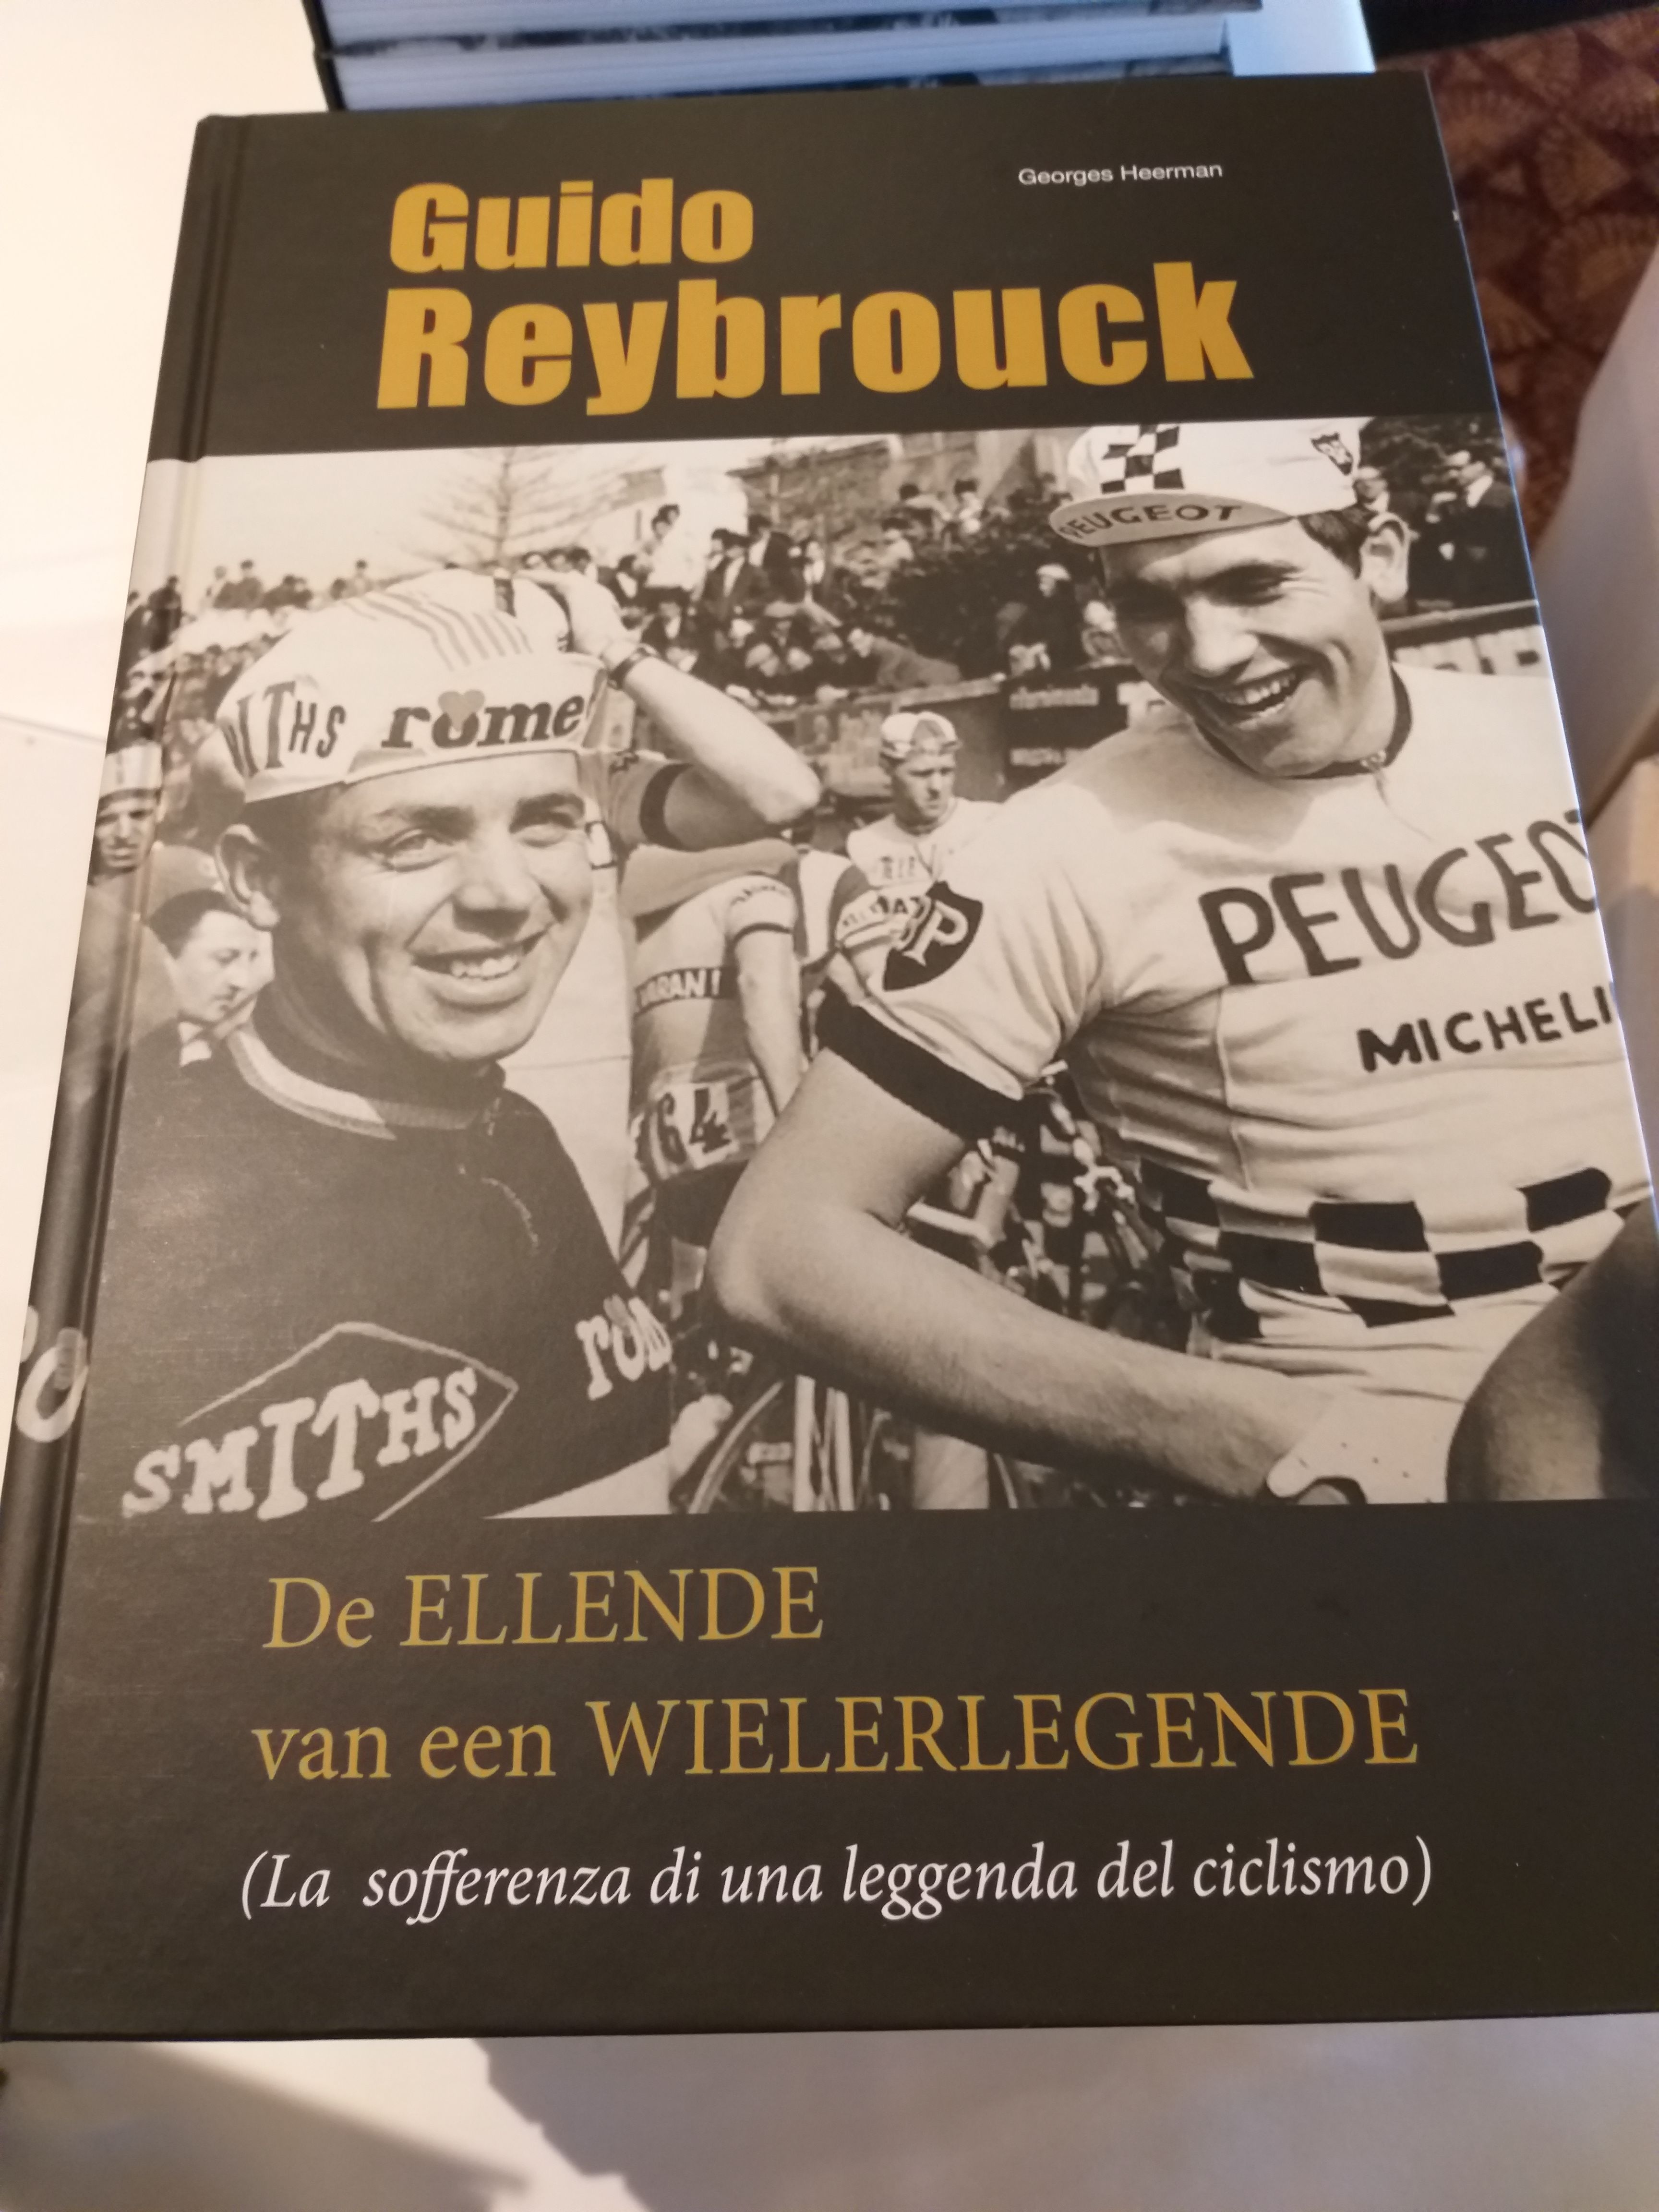 Guido Reybrouck a présenté son livre « La misère d'un légende du cyclisme » à bord du Pride of Bruges.